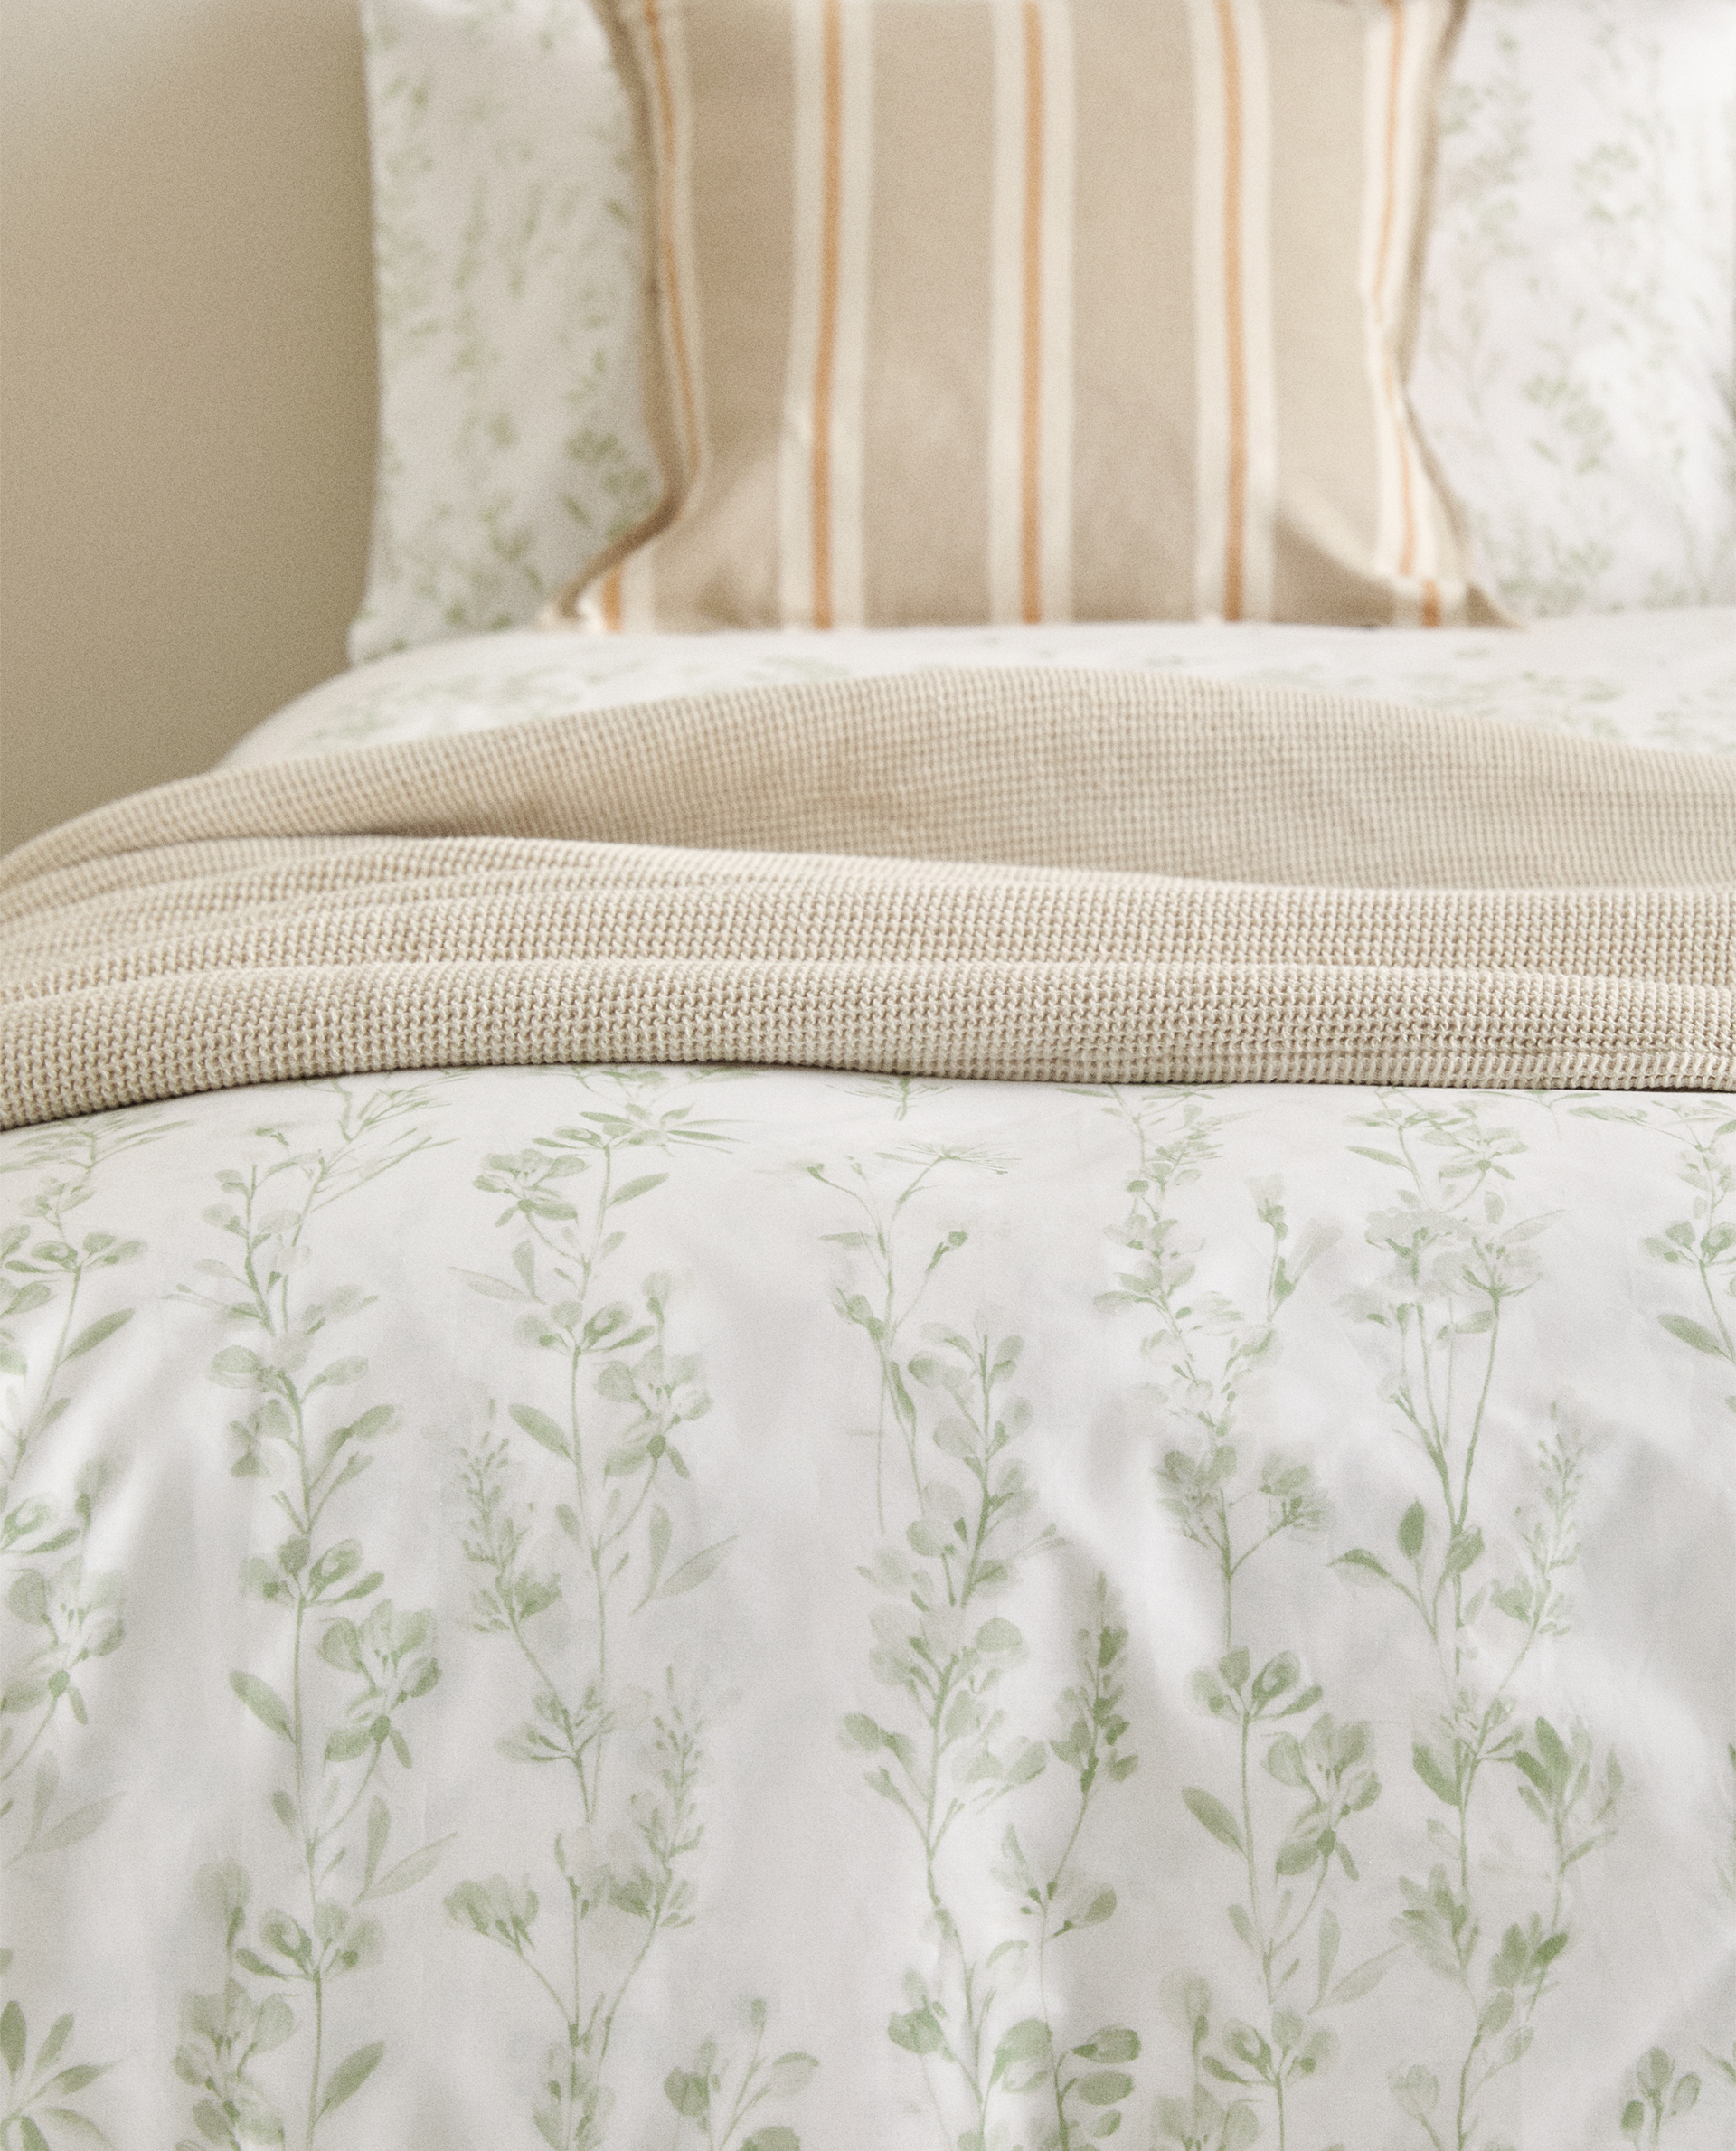 Botanical Print Duvet Cover Duvet Covers Bed Linen Bedroom